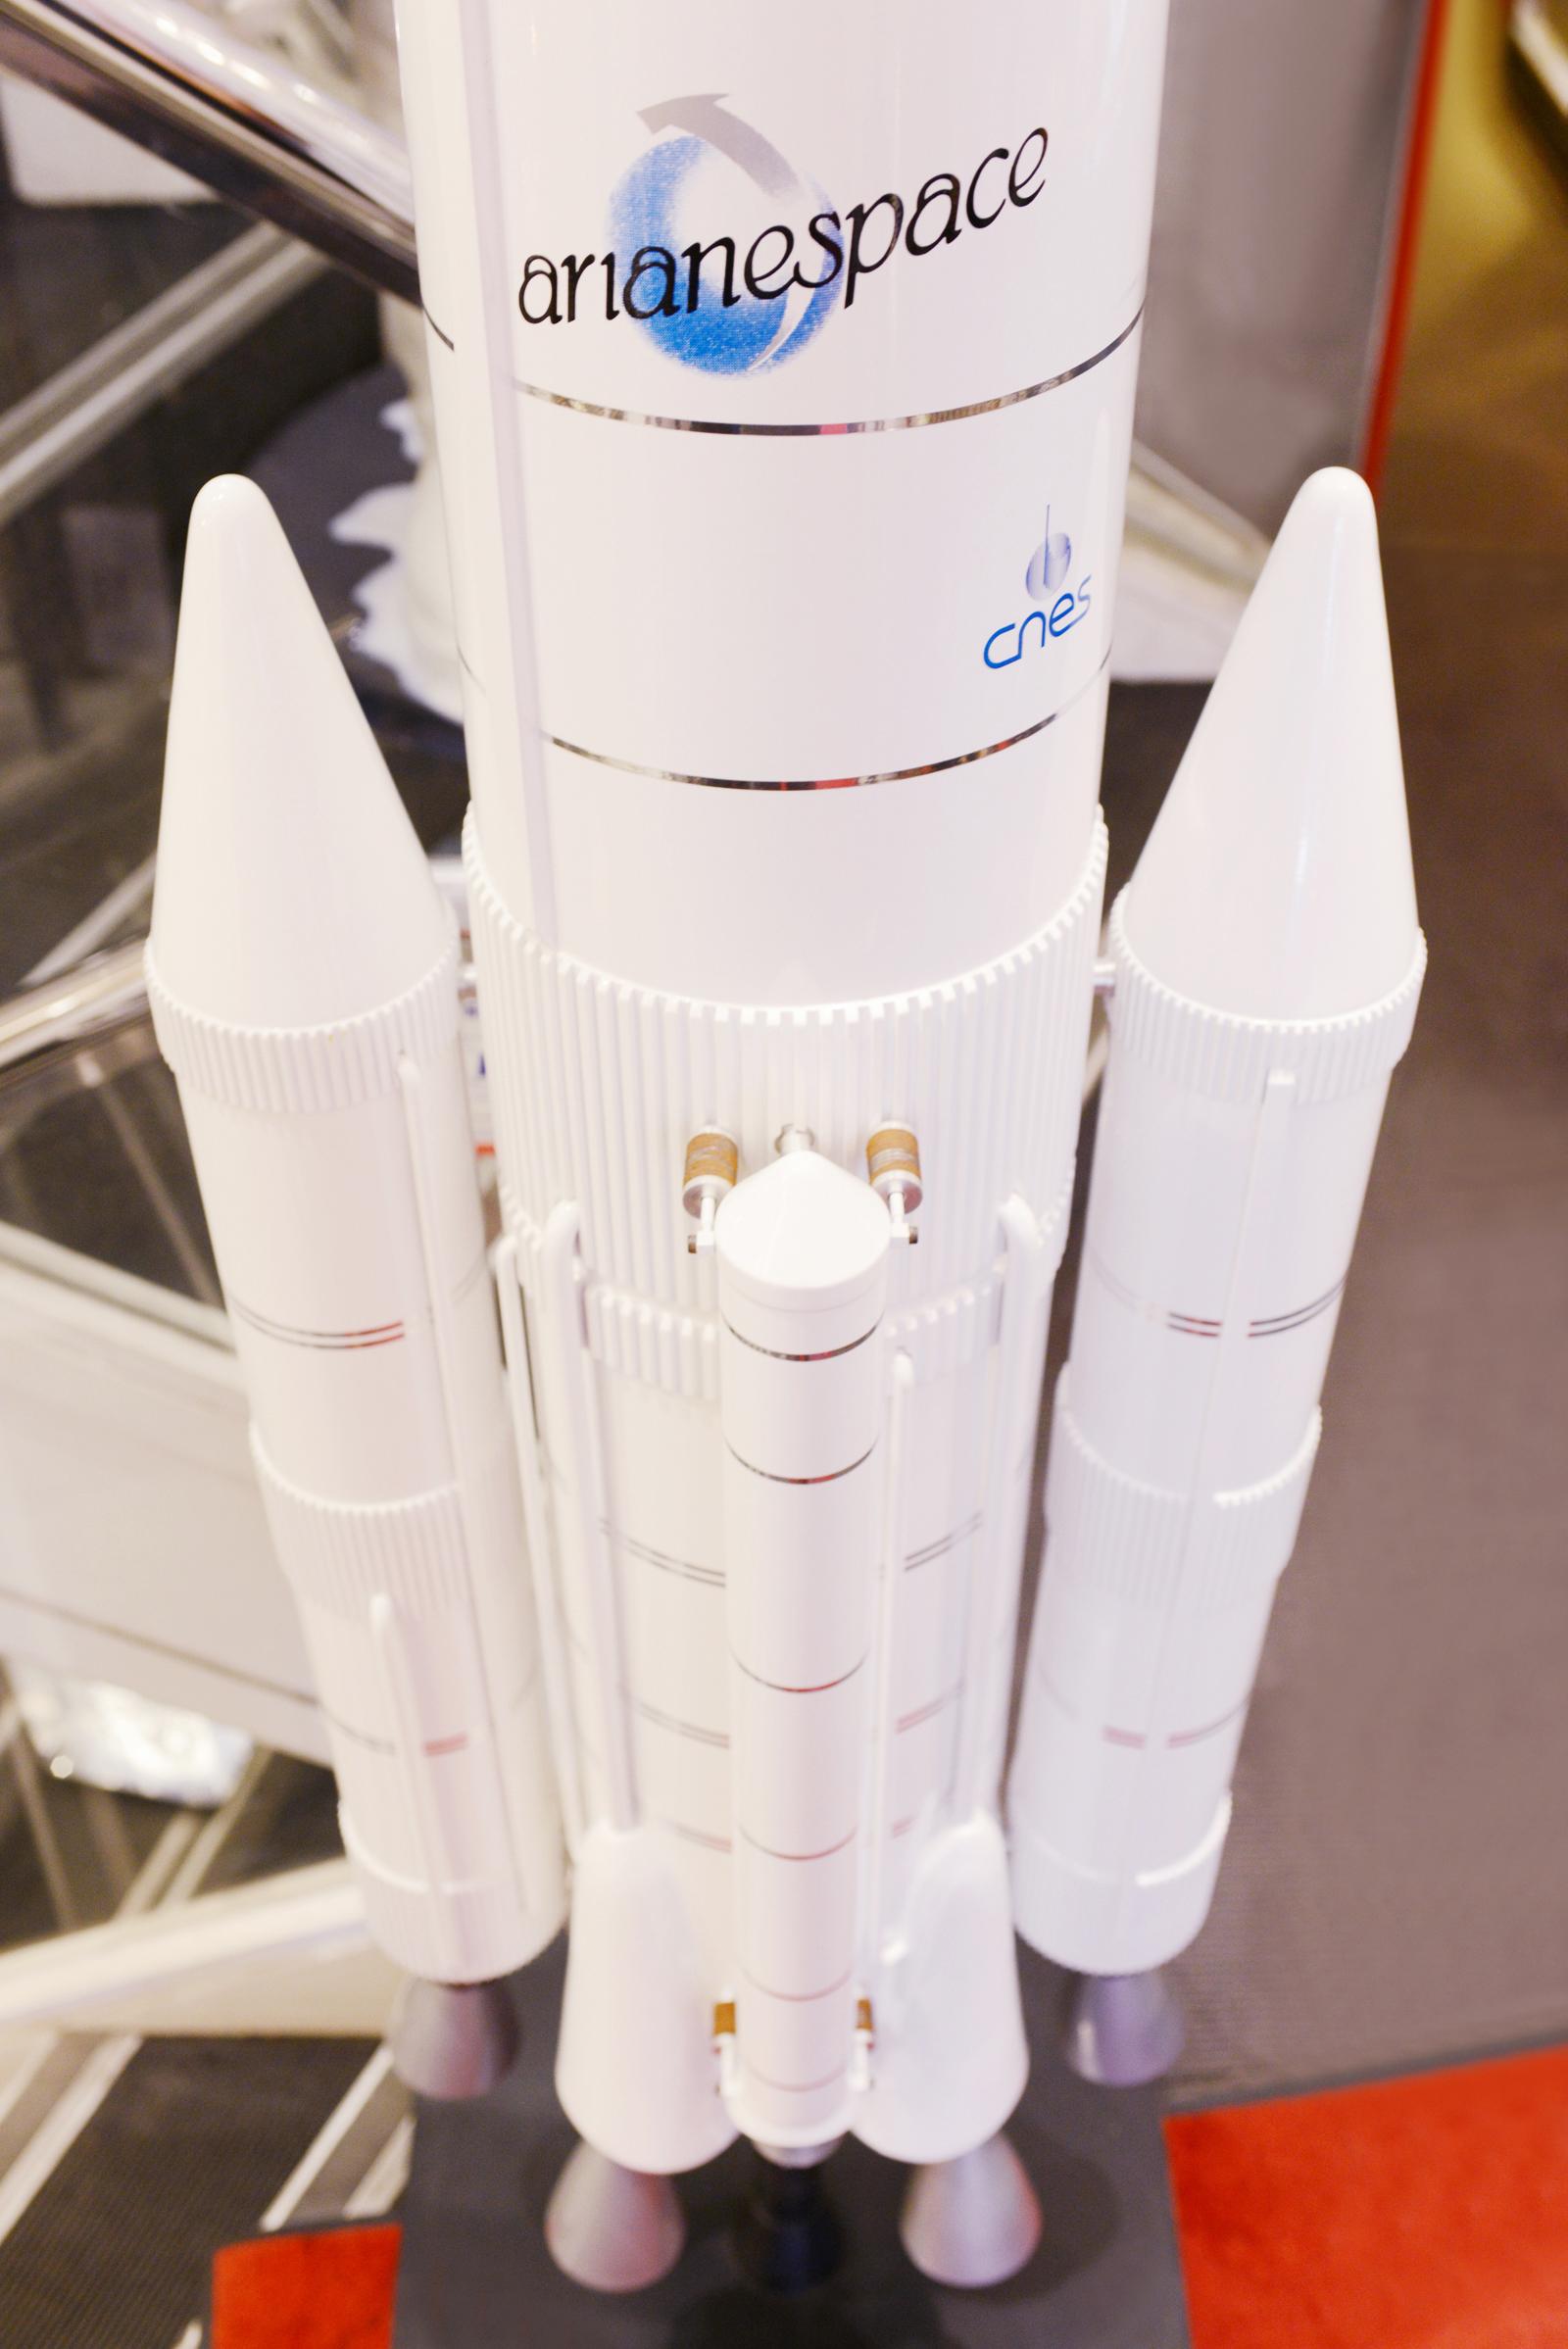 Cast Ariane IV 44lp Rocket Model on 1/20em Scale